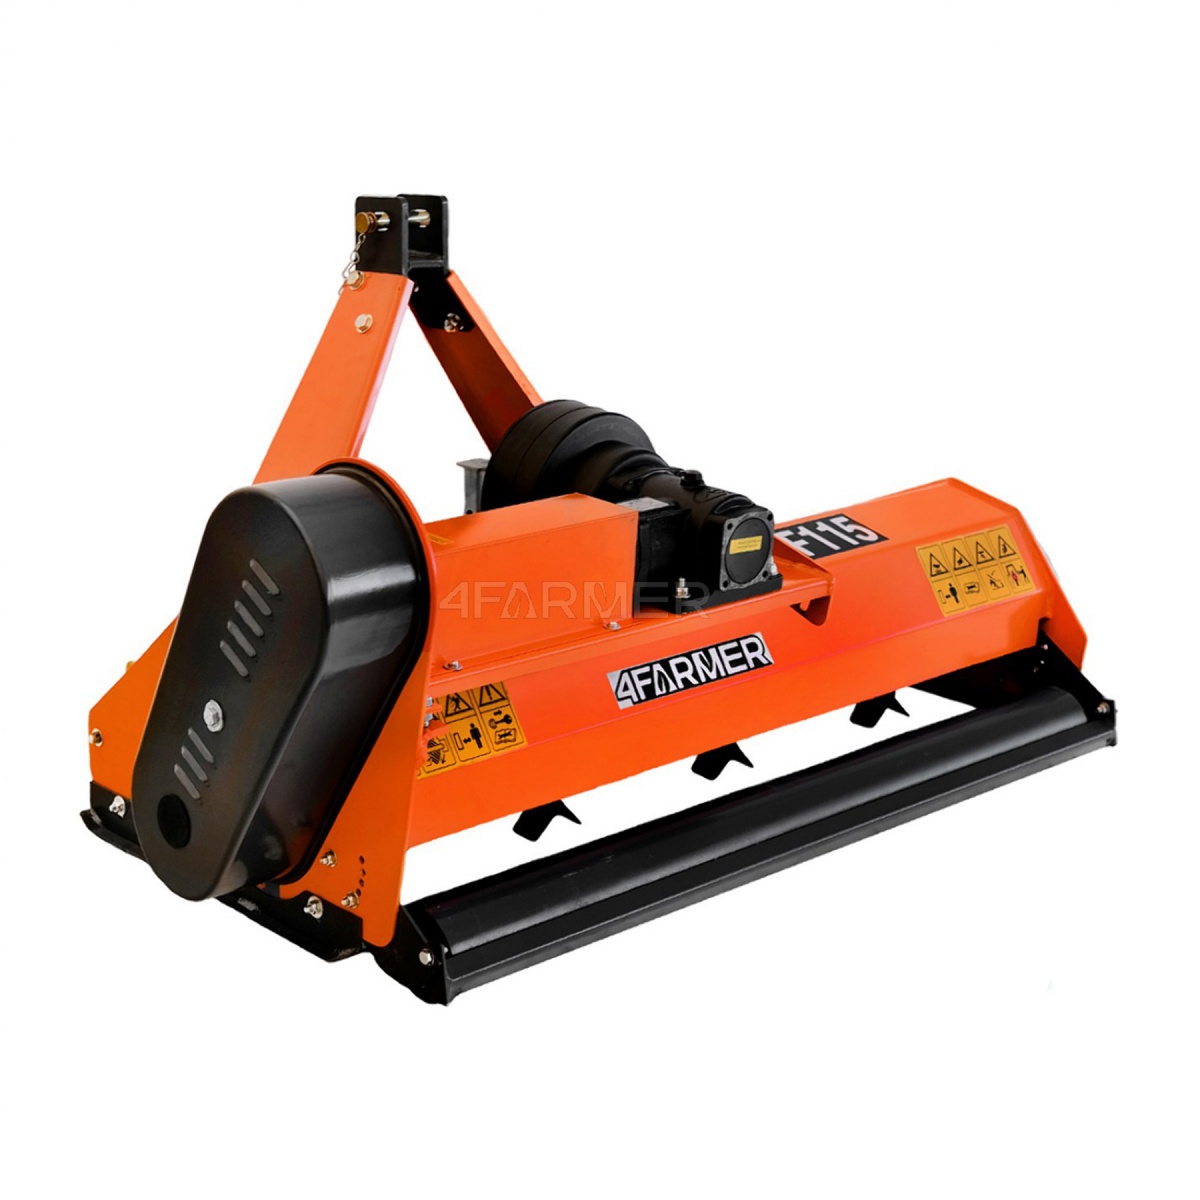 flail movers - Flail mower EF 125 4FARMER - orange